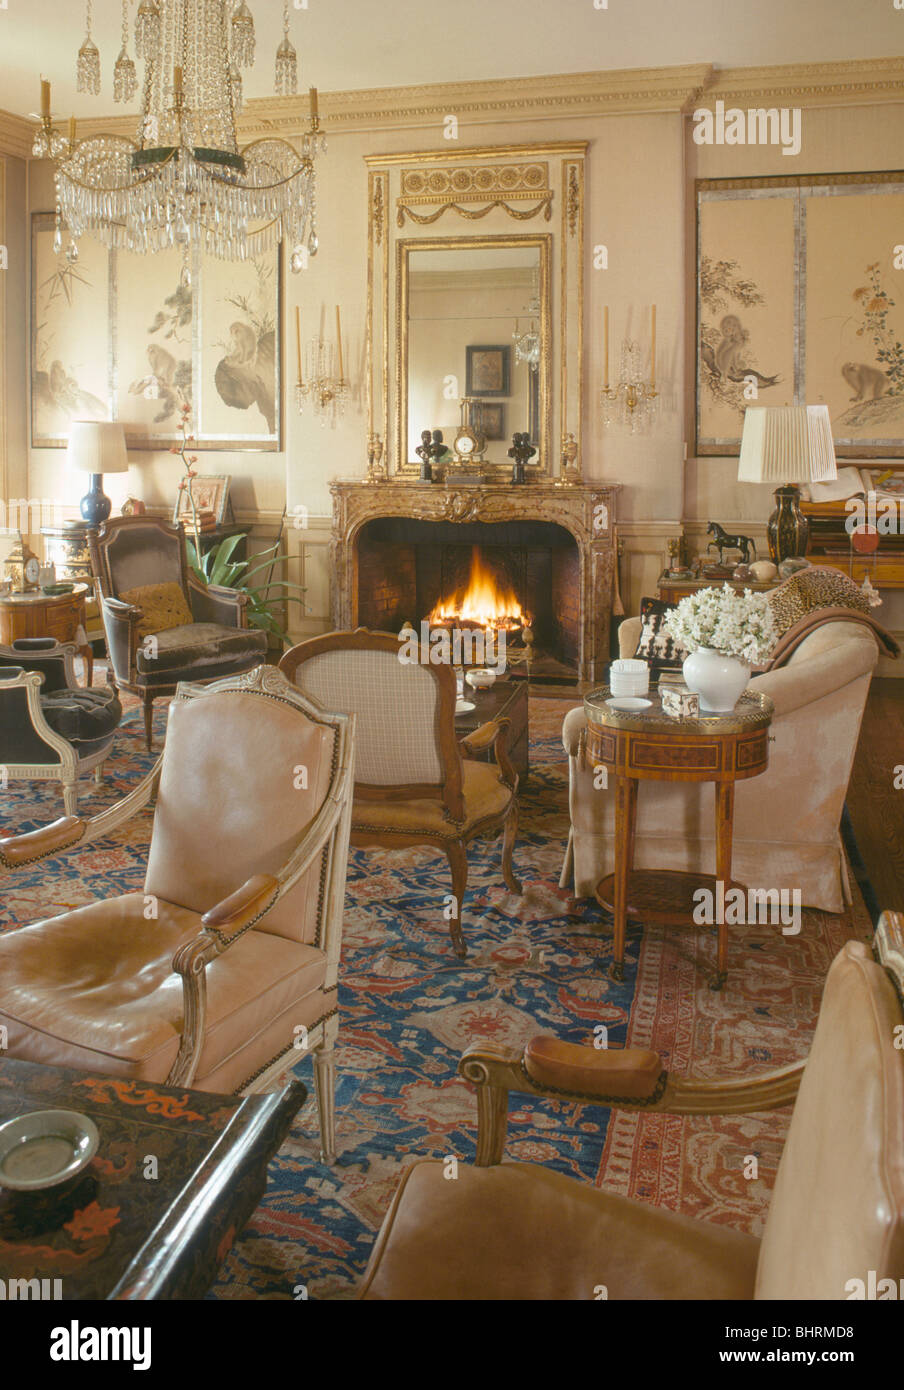 Antike Möbel und gemusterten Teppich im Stadthaus Salon mit brennenden Feuer im Kamin Stockfoto